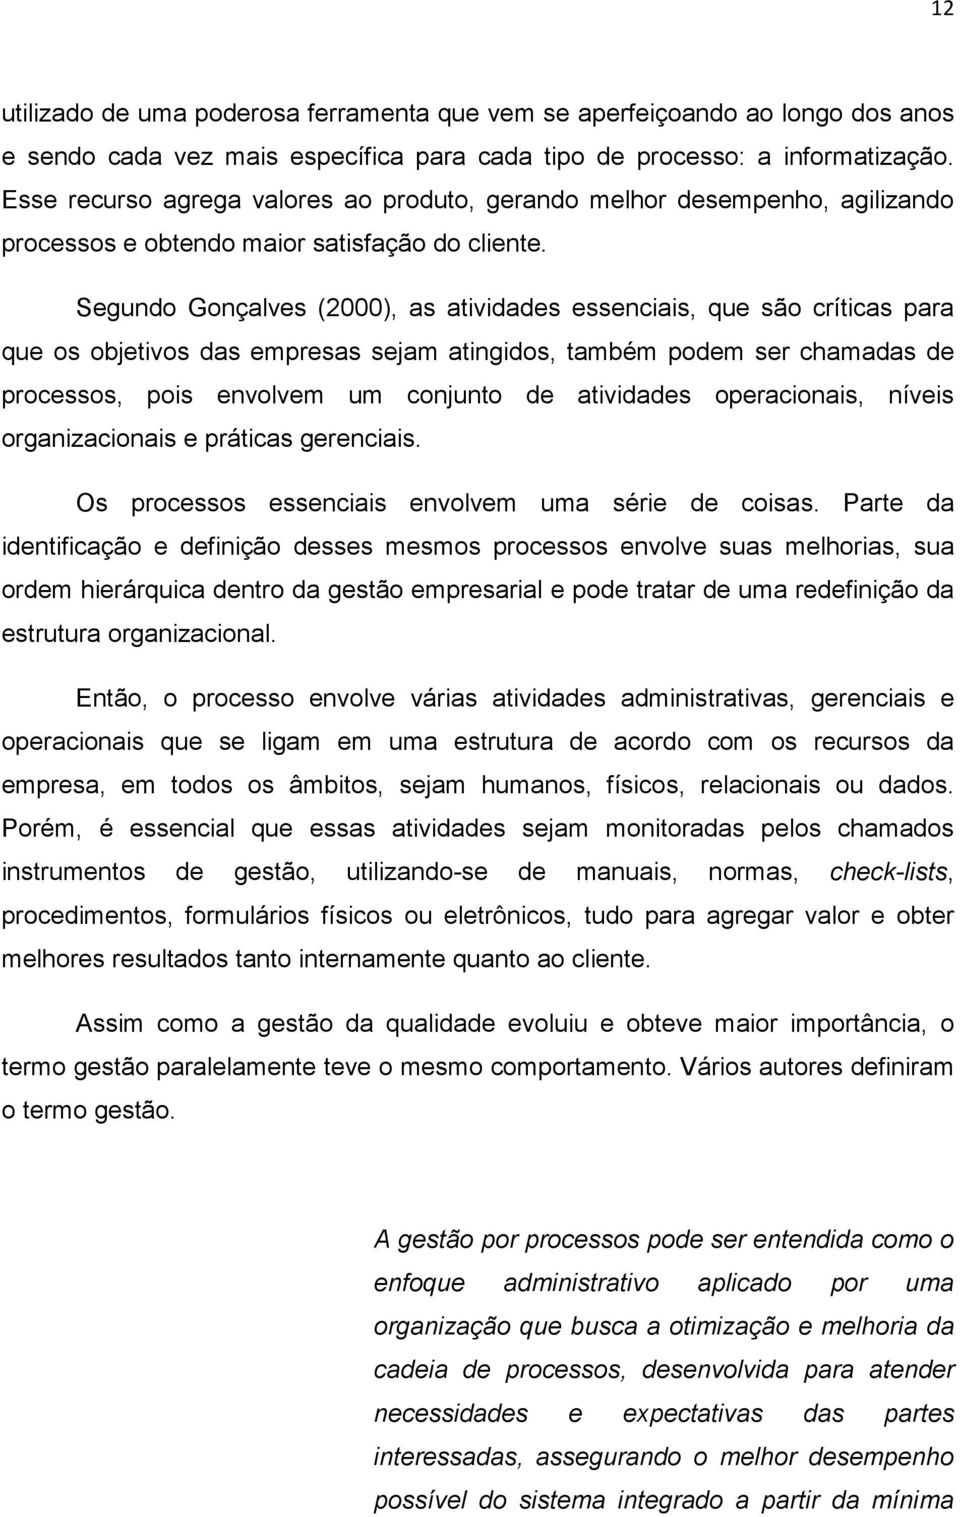 Segundo Gonçalves (2000), as atividades essenciais, que são críticas para que os objetivos das empresas sejam atingidos, também podem ser chamadas de processos, pois envolvem um conjunto de